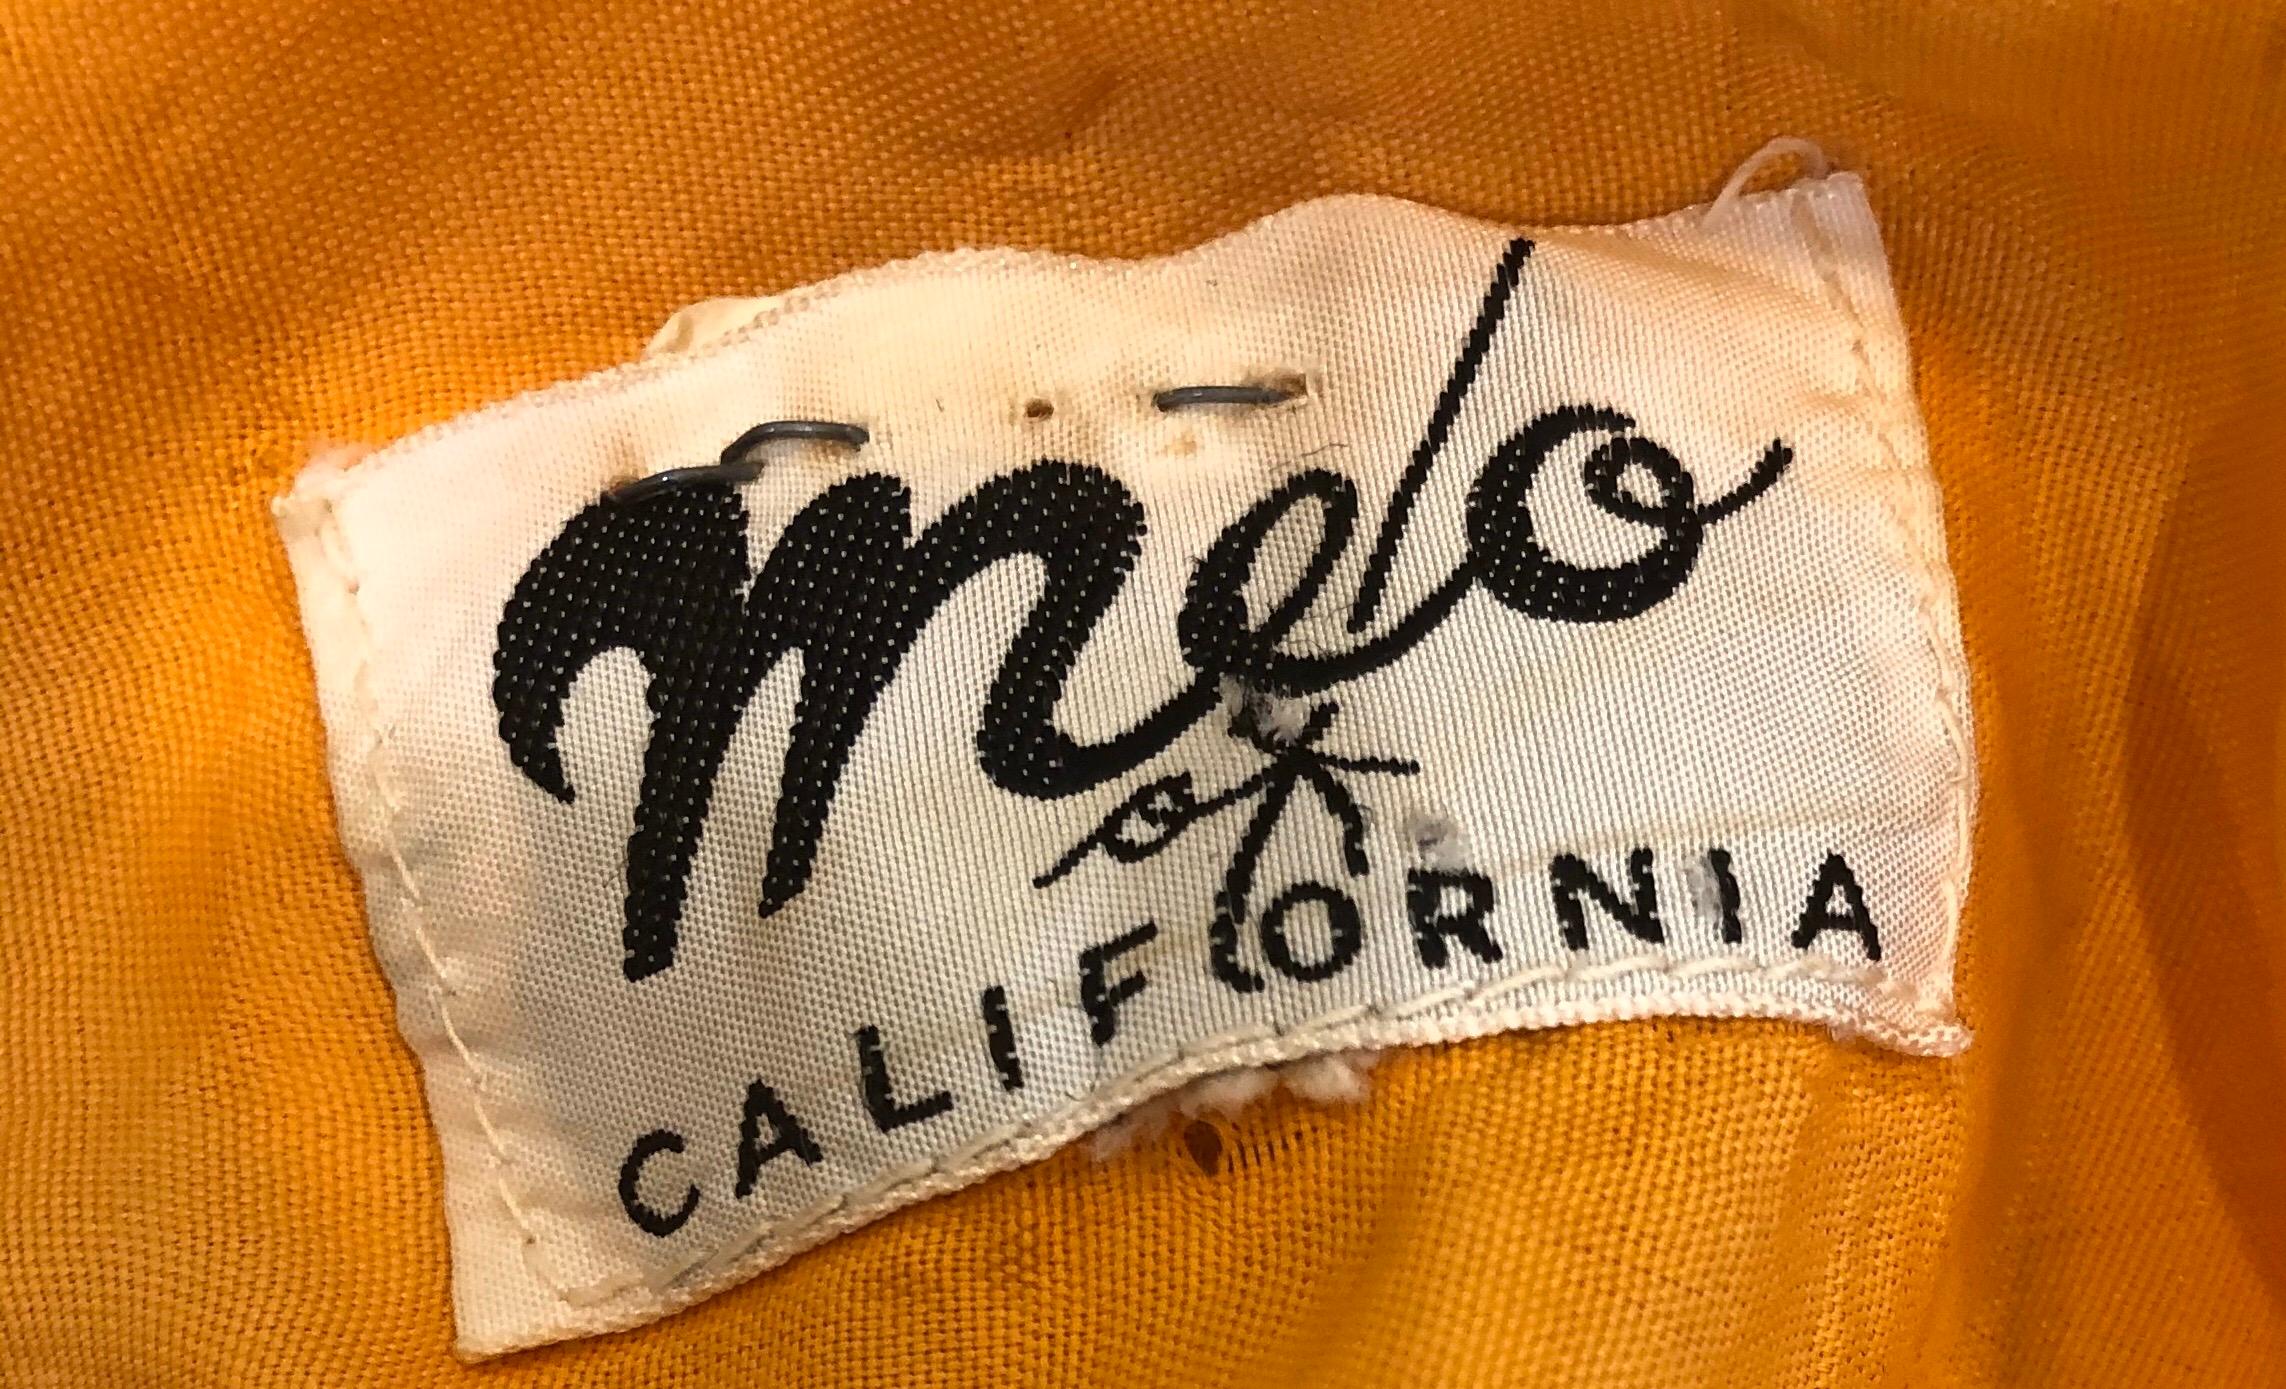 Chic robe fourreau en coton imprimé de fleurs orange, vertes et roses de MELO OF CALIFORNIA du début des années 60 ! La toile de fond est d'un orange fluo vibrant, avec des fleurs imprimées dans des couleurs vives comme le rose, le vert kelly, le